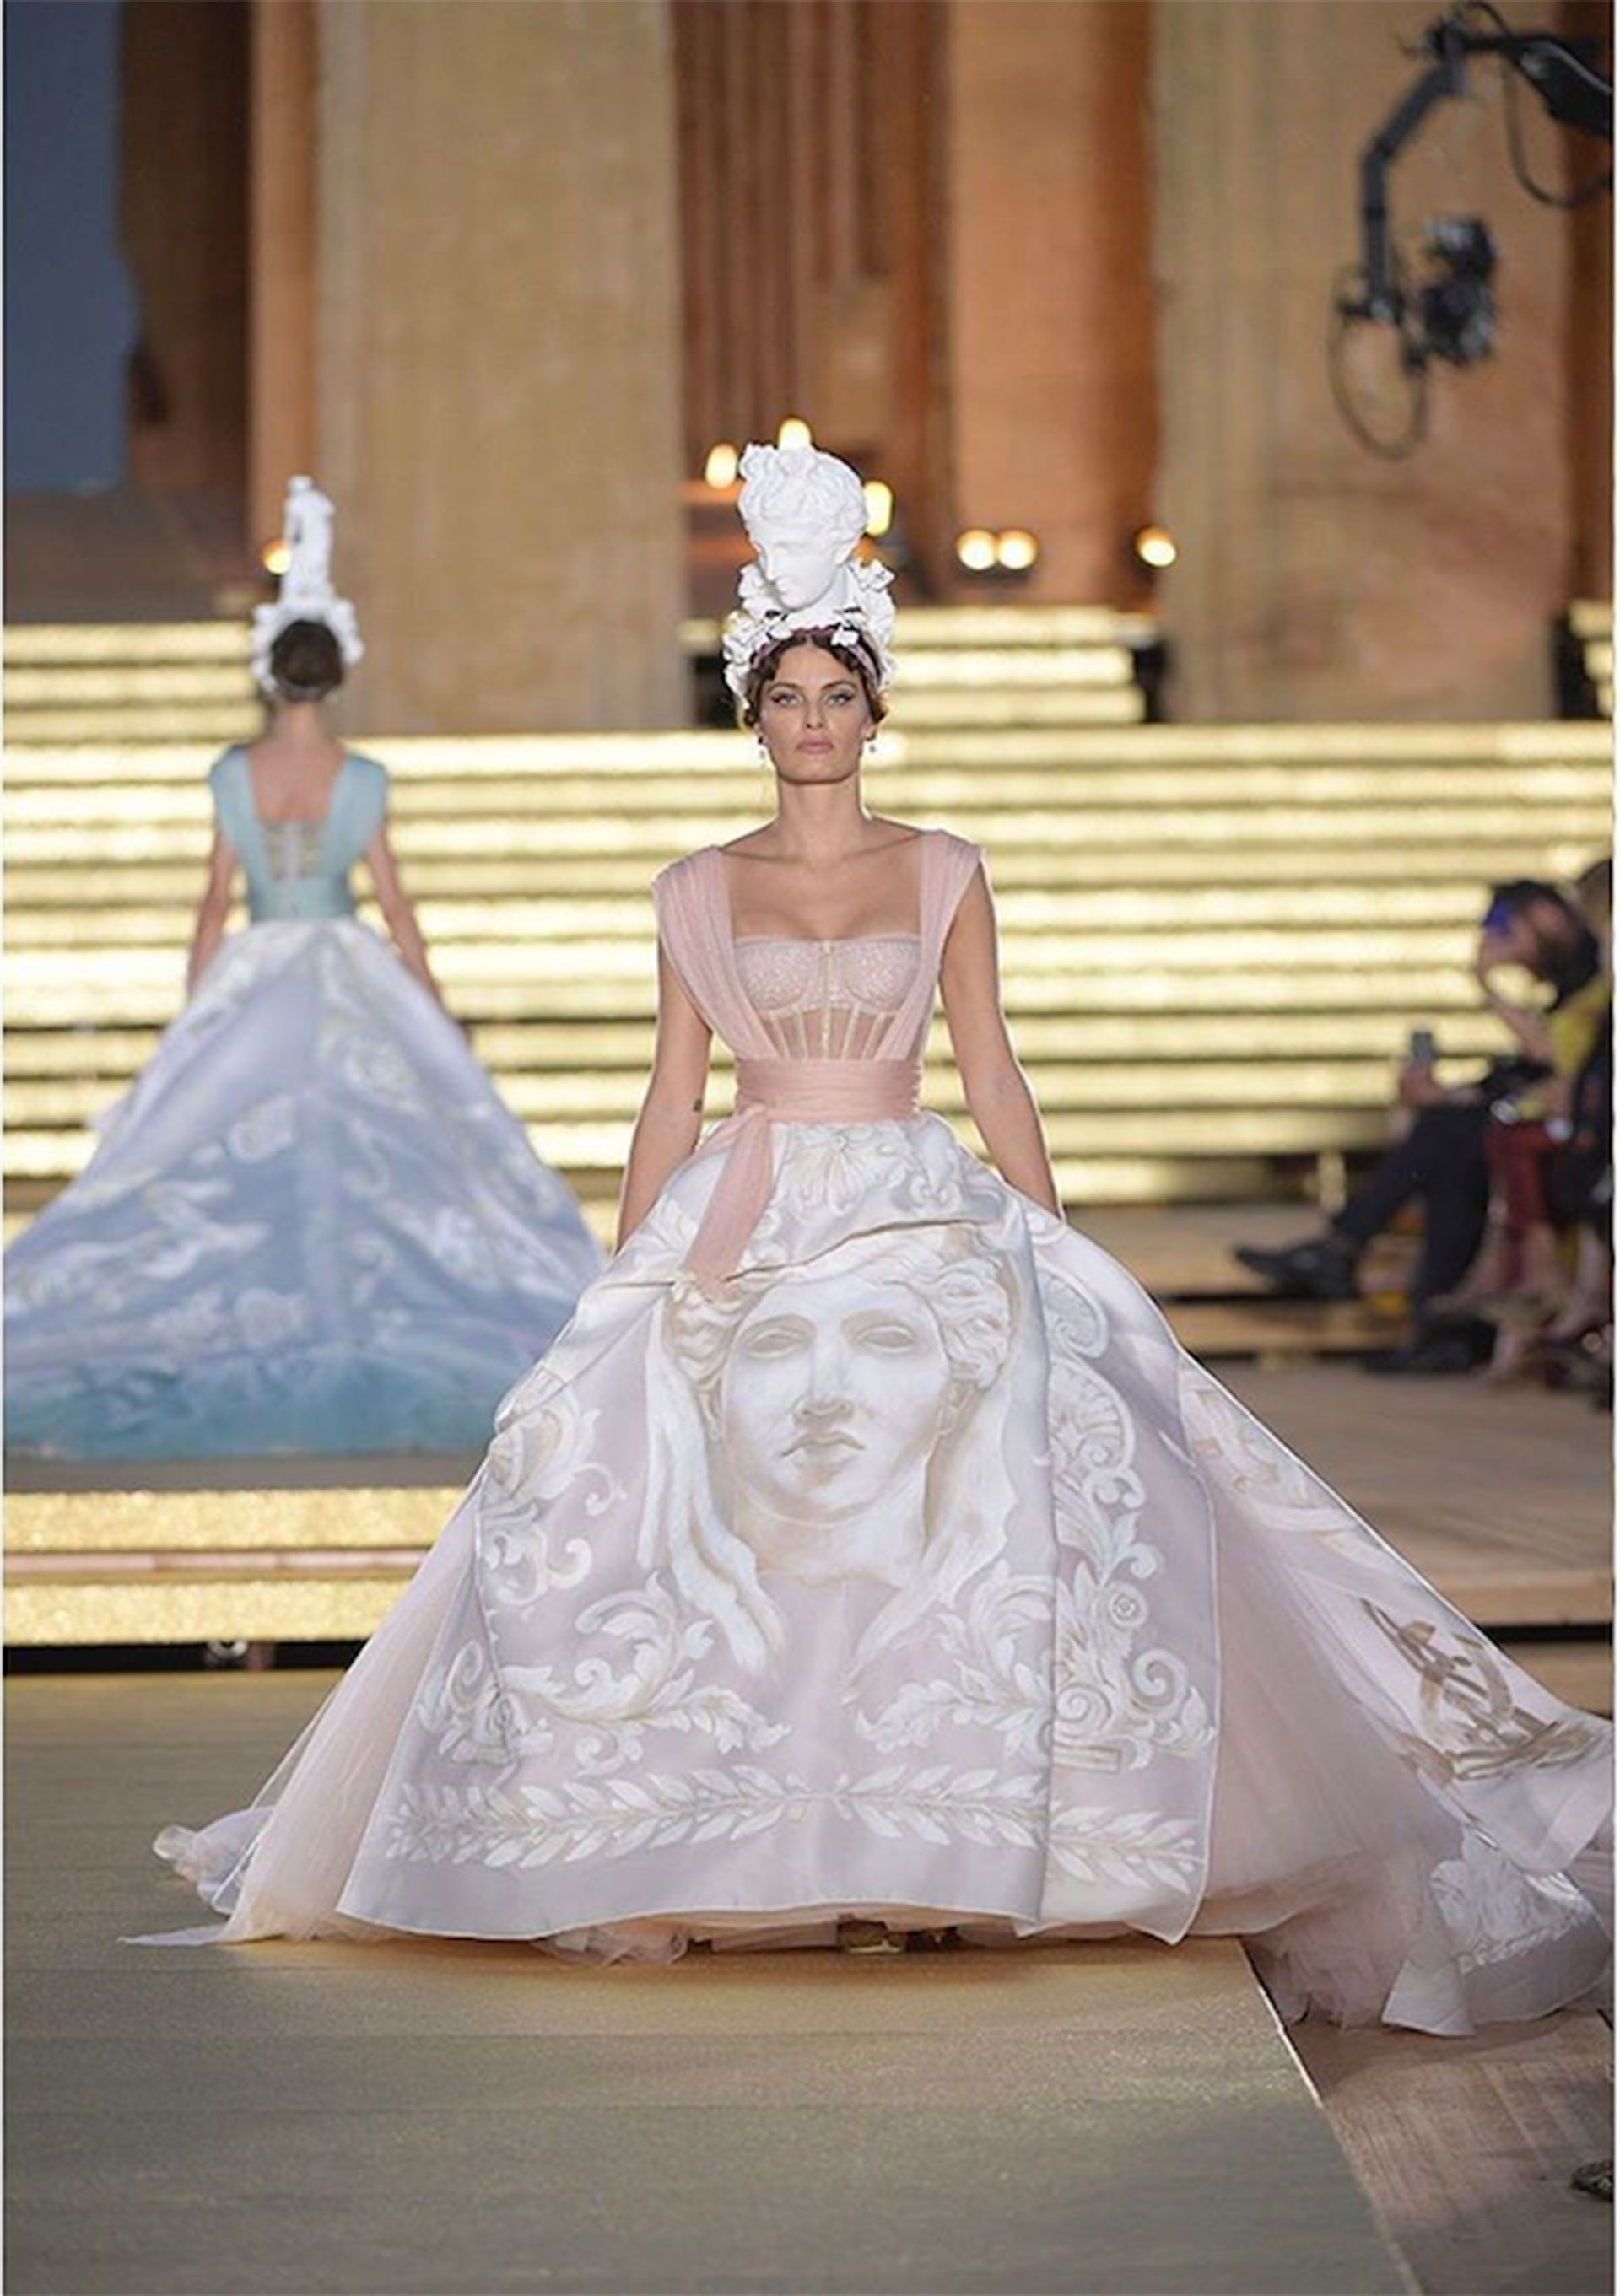 La top model brasilera Isabeli Fontana lleva un vestido con corsé de tul ilusionado. La falda drapeada de organza doble está pintada a mano y cuenta las obras y cualidades de Hera.